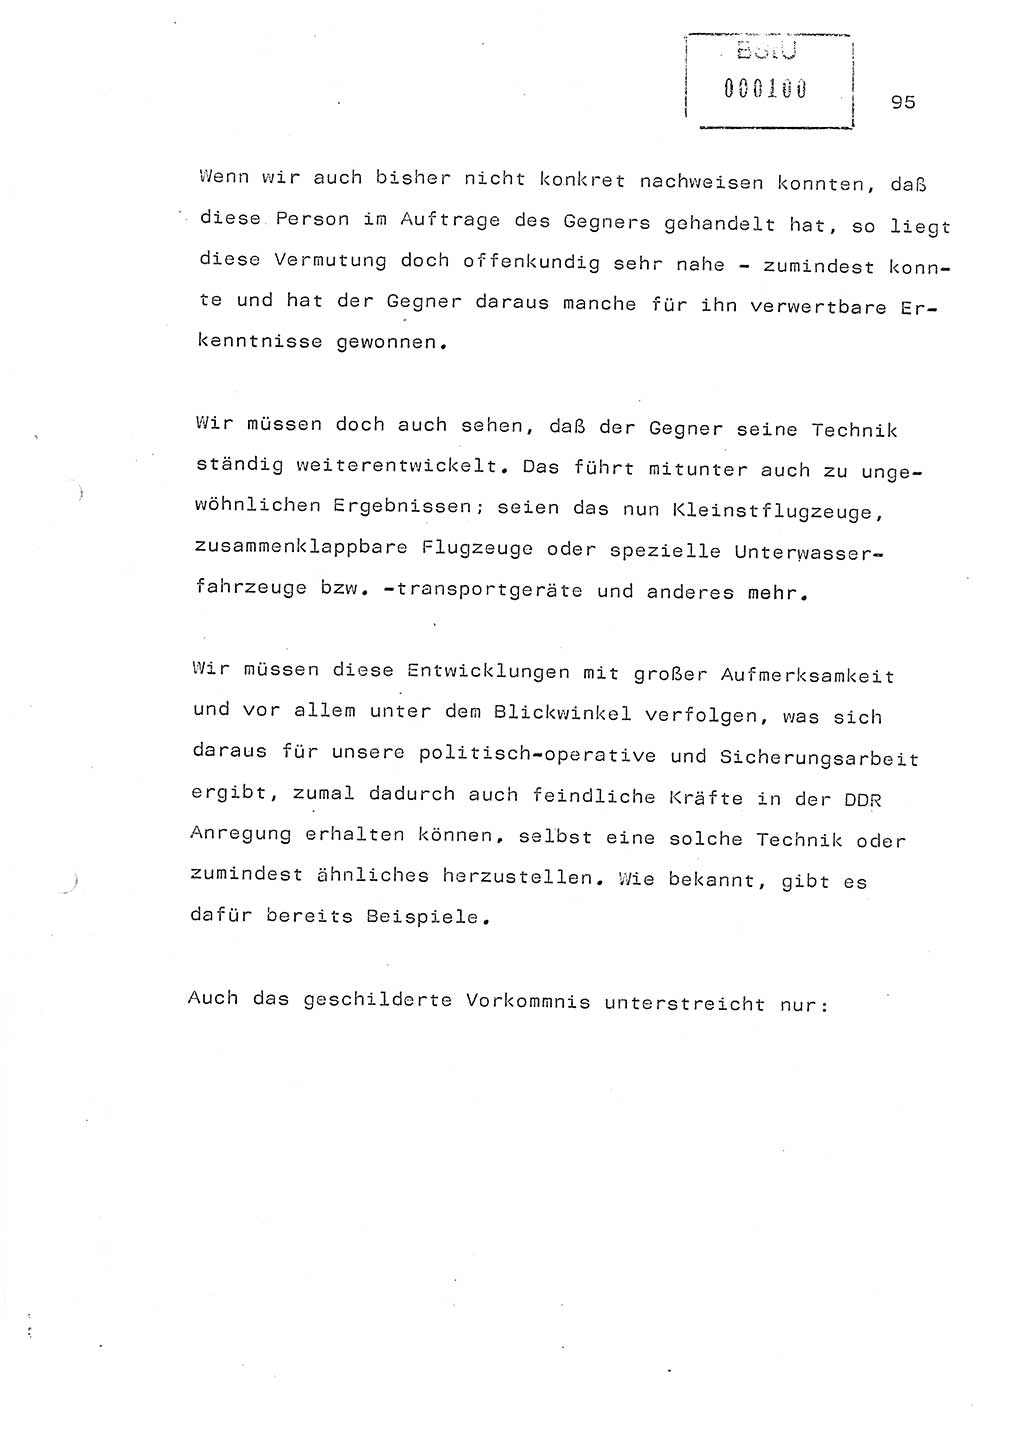 Referat (Generaloberst Erich Mielke) auf der Zentralen Dienstkonferenz am 24.5.1979 [Ministerium für Staatssicherheit (MfS), Deutsche Demokratische Republik (DDR), Der Minister], Berlin 1979, Seite 95 (Ref. DK DDR MfS Min. /79 1979, S. 95)